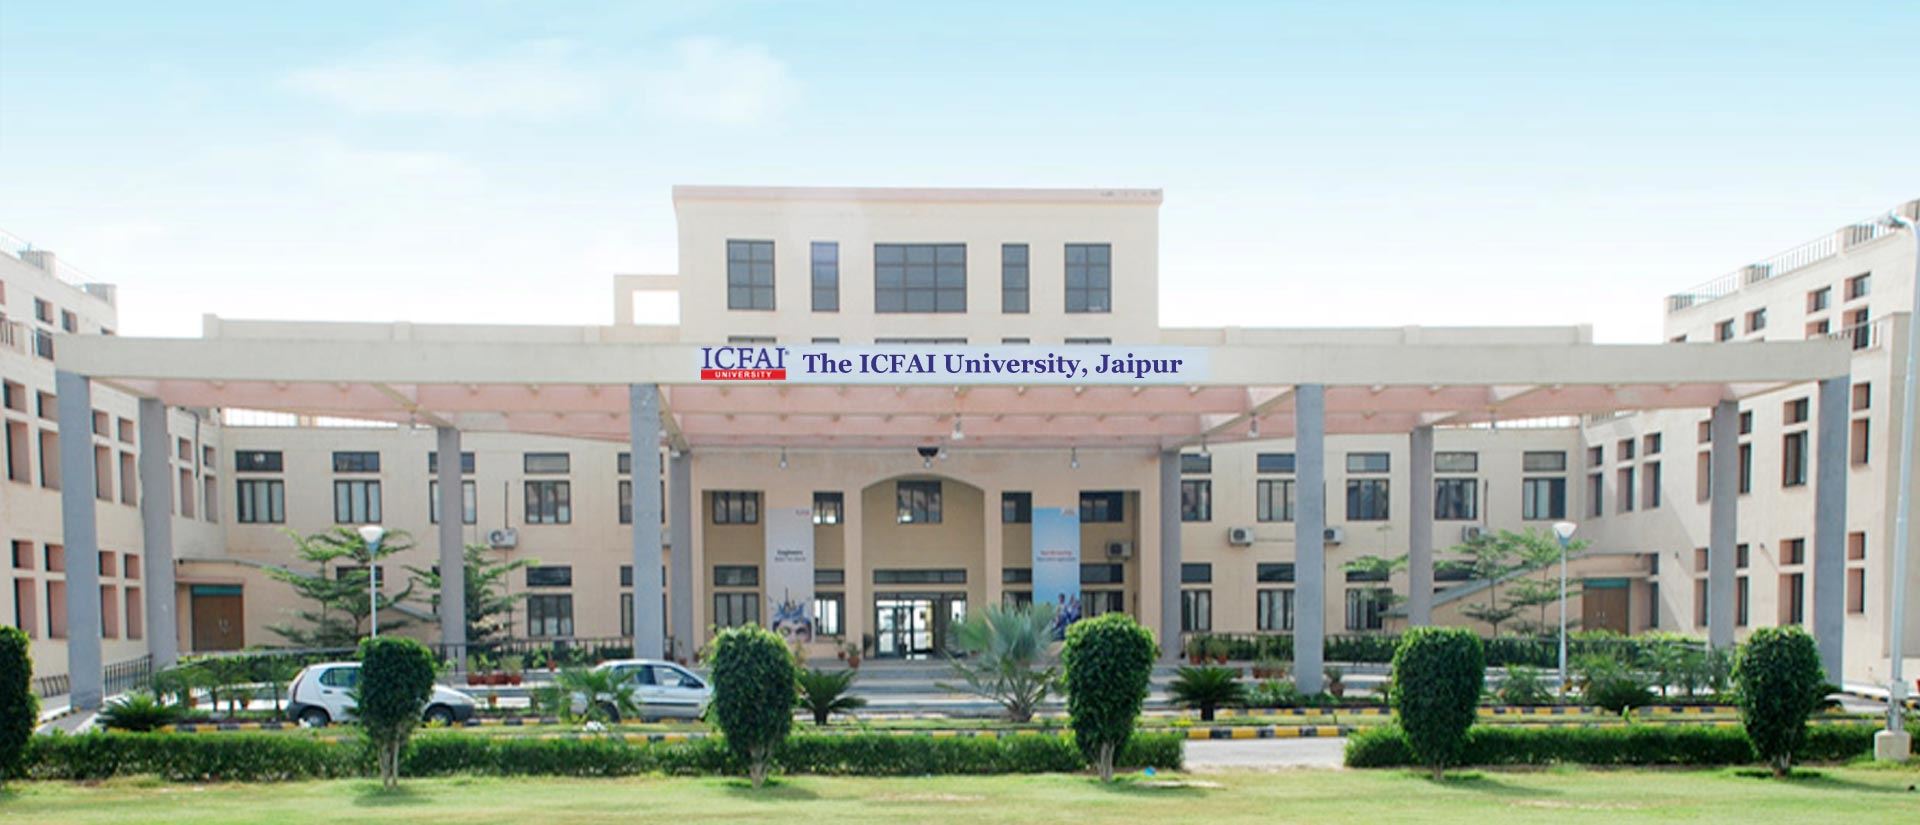 ICFAI University, Jaipur (Rajasthan)